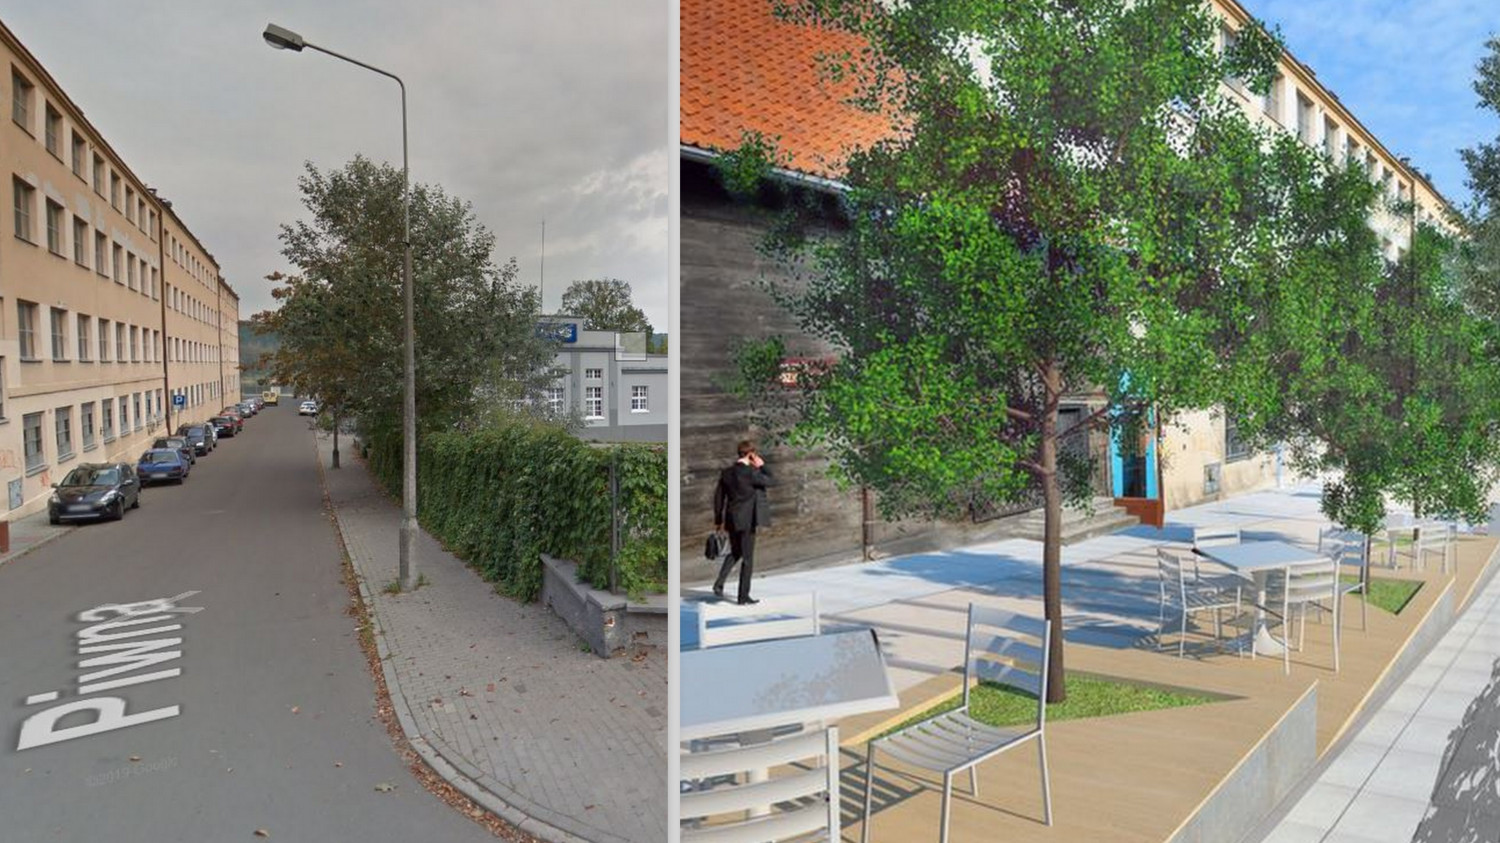 Z lewej: Widok z Google Maps przed przebudową. Z prawej: Wizualizacja inwestycji.